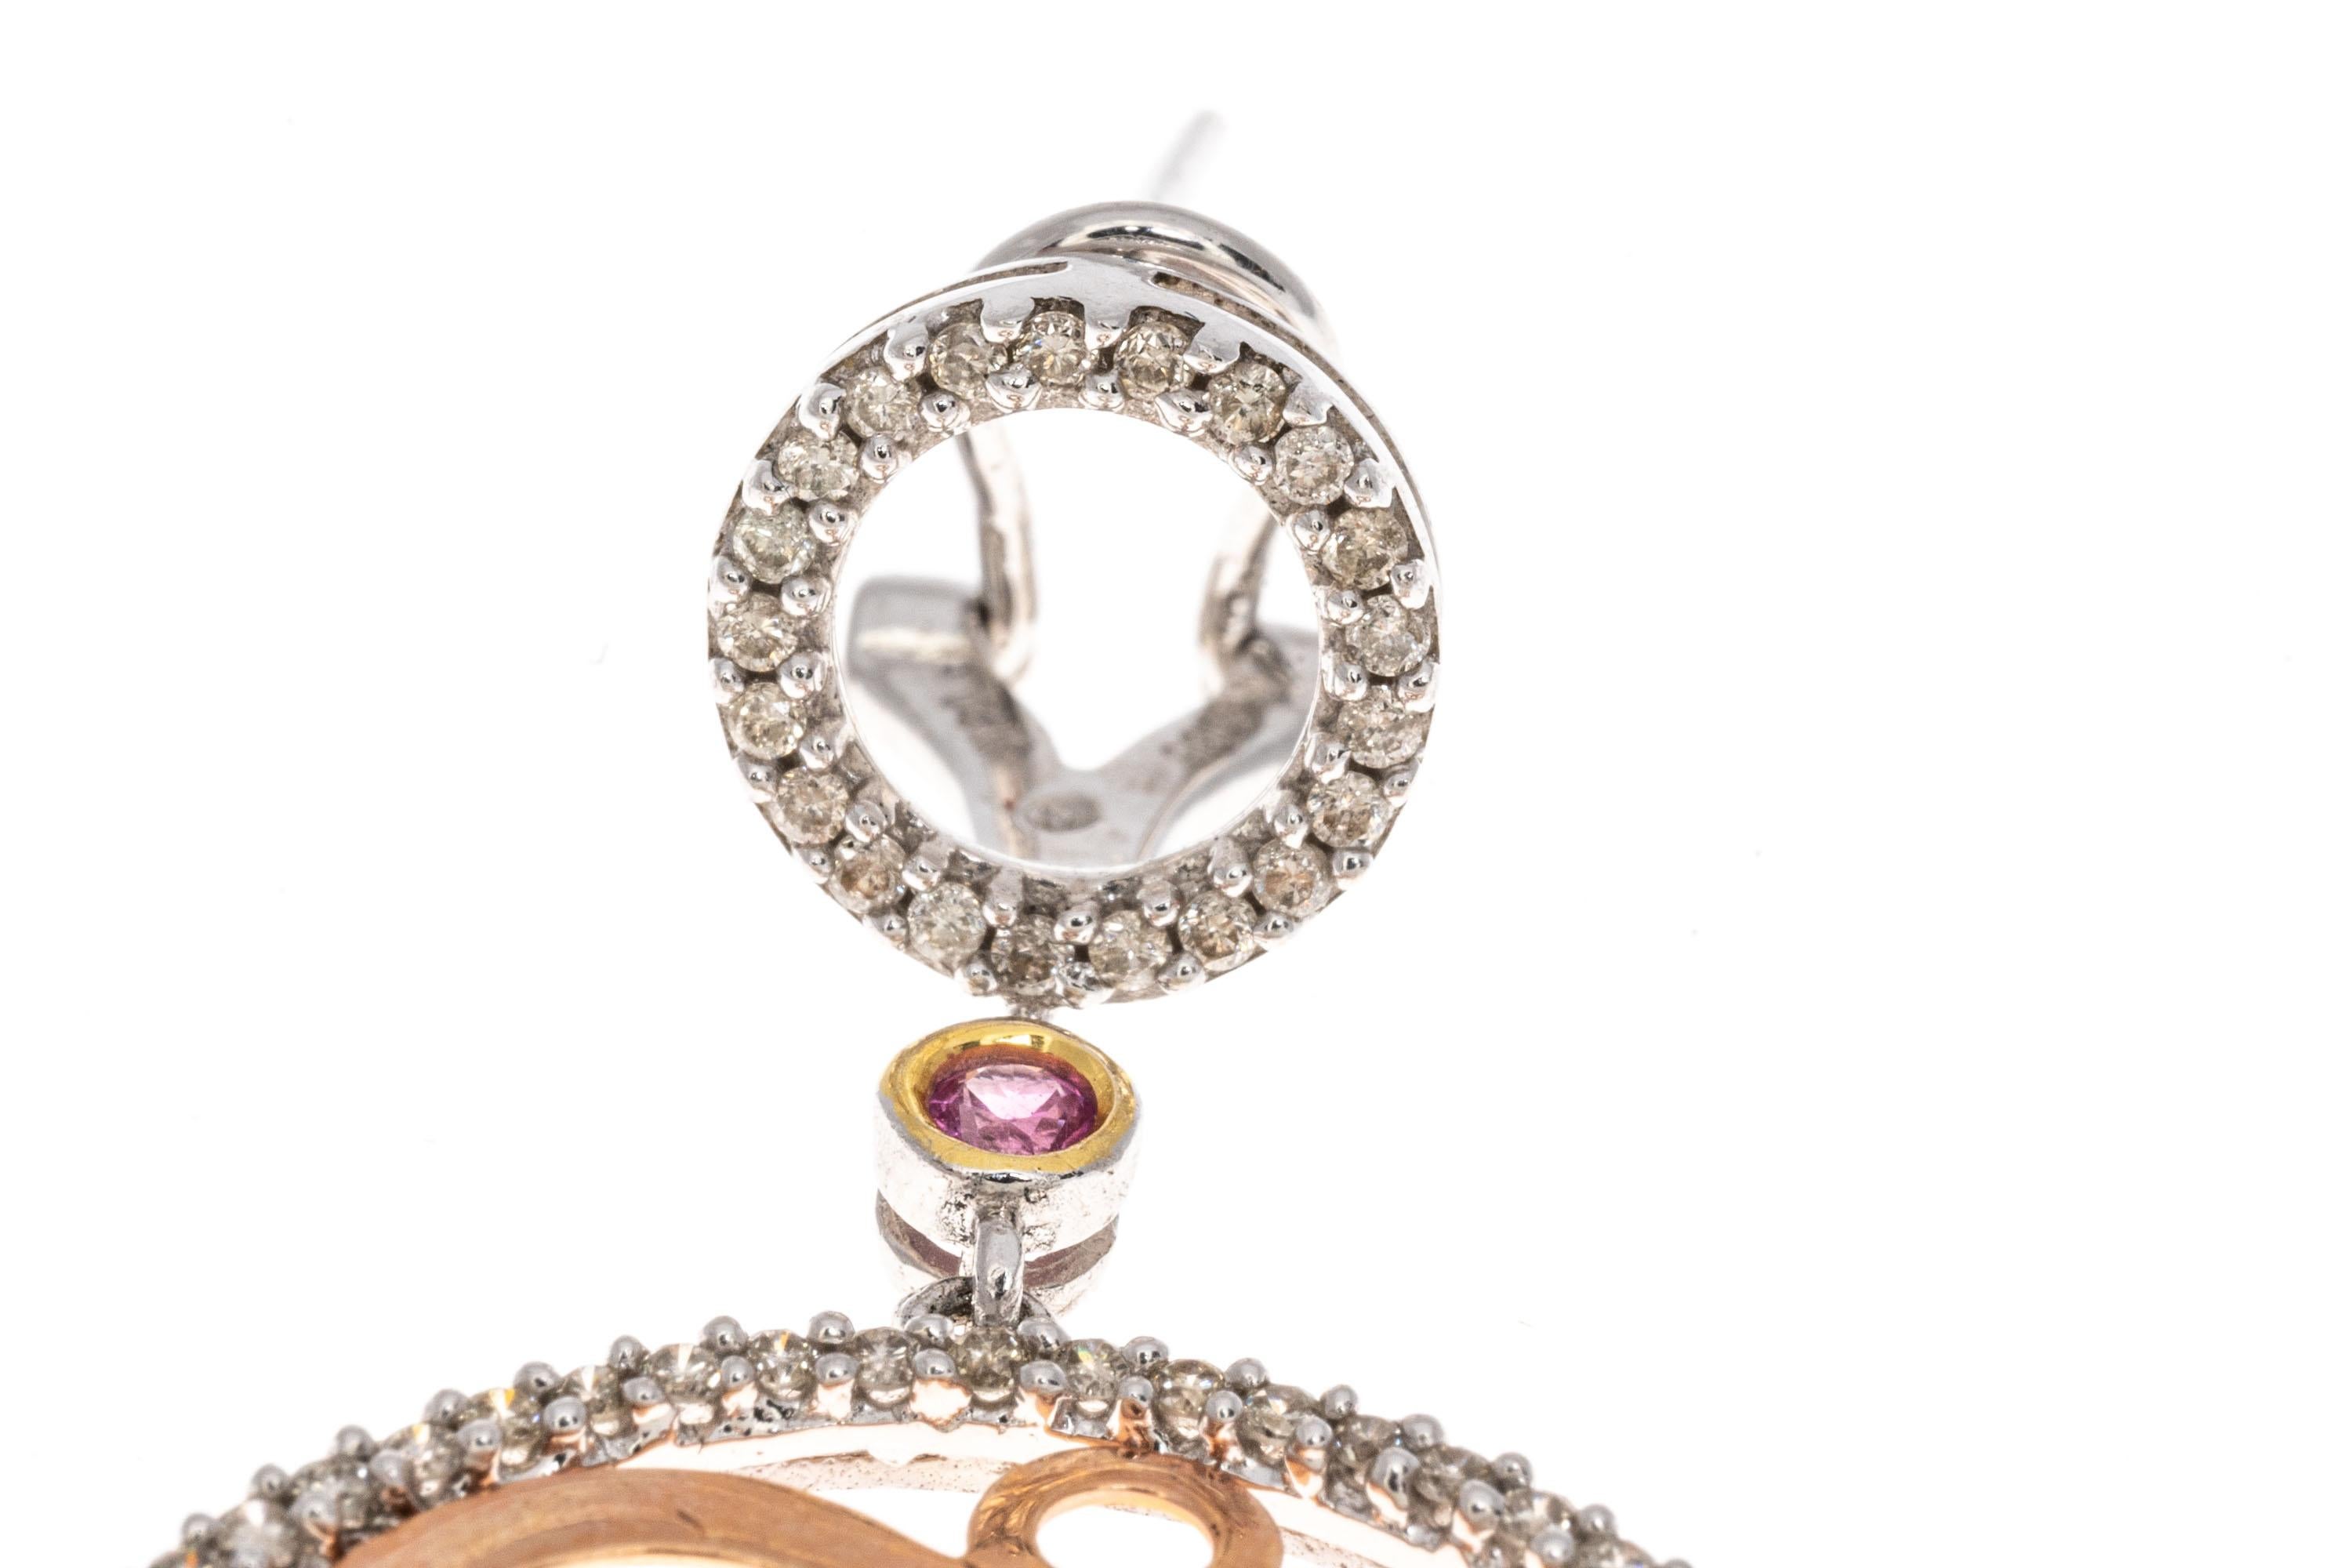 Ohrringe aus 14 Karat Rosé- und Weißgold. Diese fabelhaften  Die modischen Ohrringe im Stil eines Anhängers bestehen aus einem kleinen, offenen Kreis, der mit runden, facettierten, weißen Diamanten besetzt ist und an dem ein runder, facettierter,